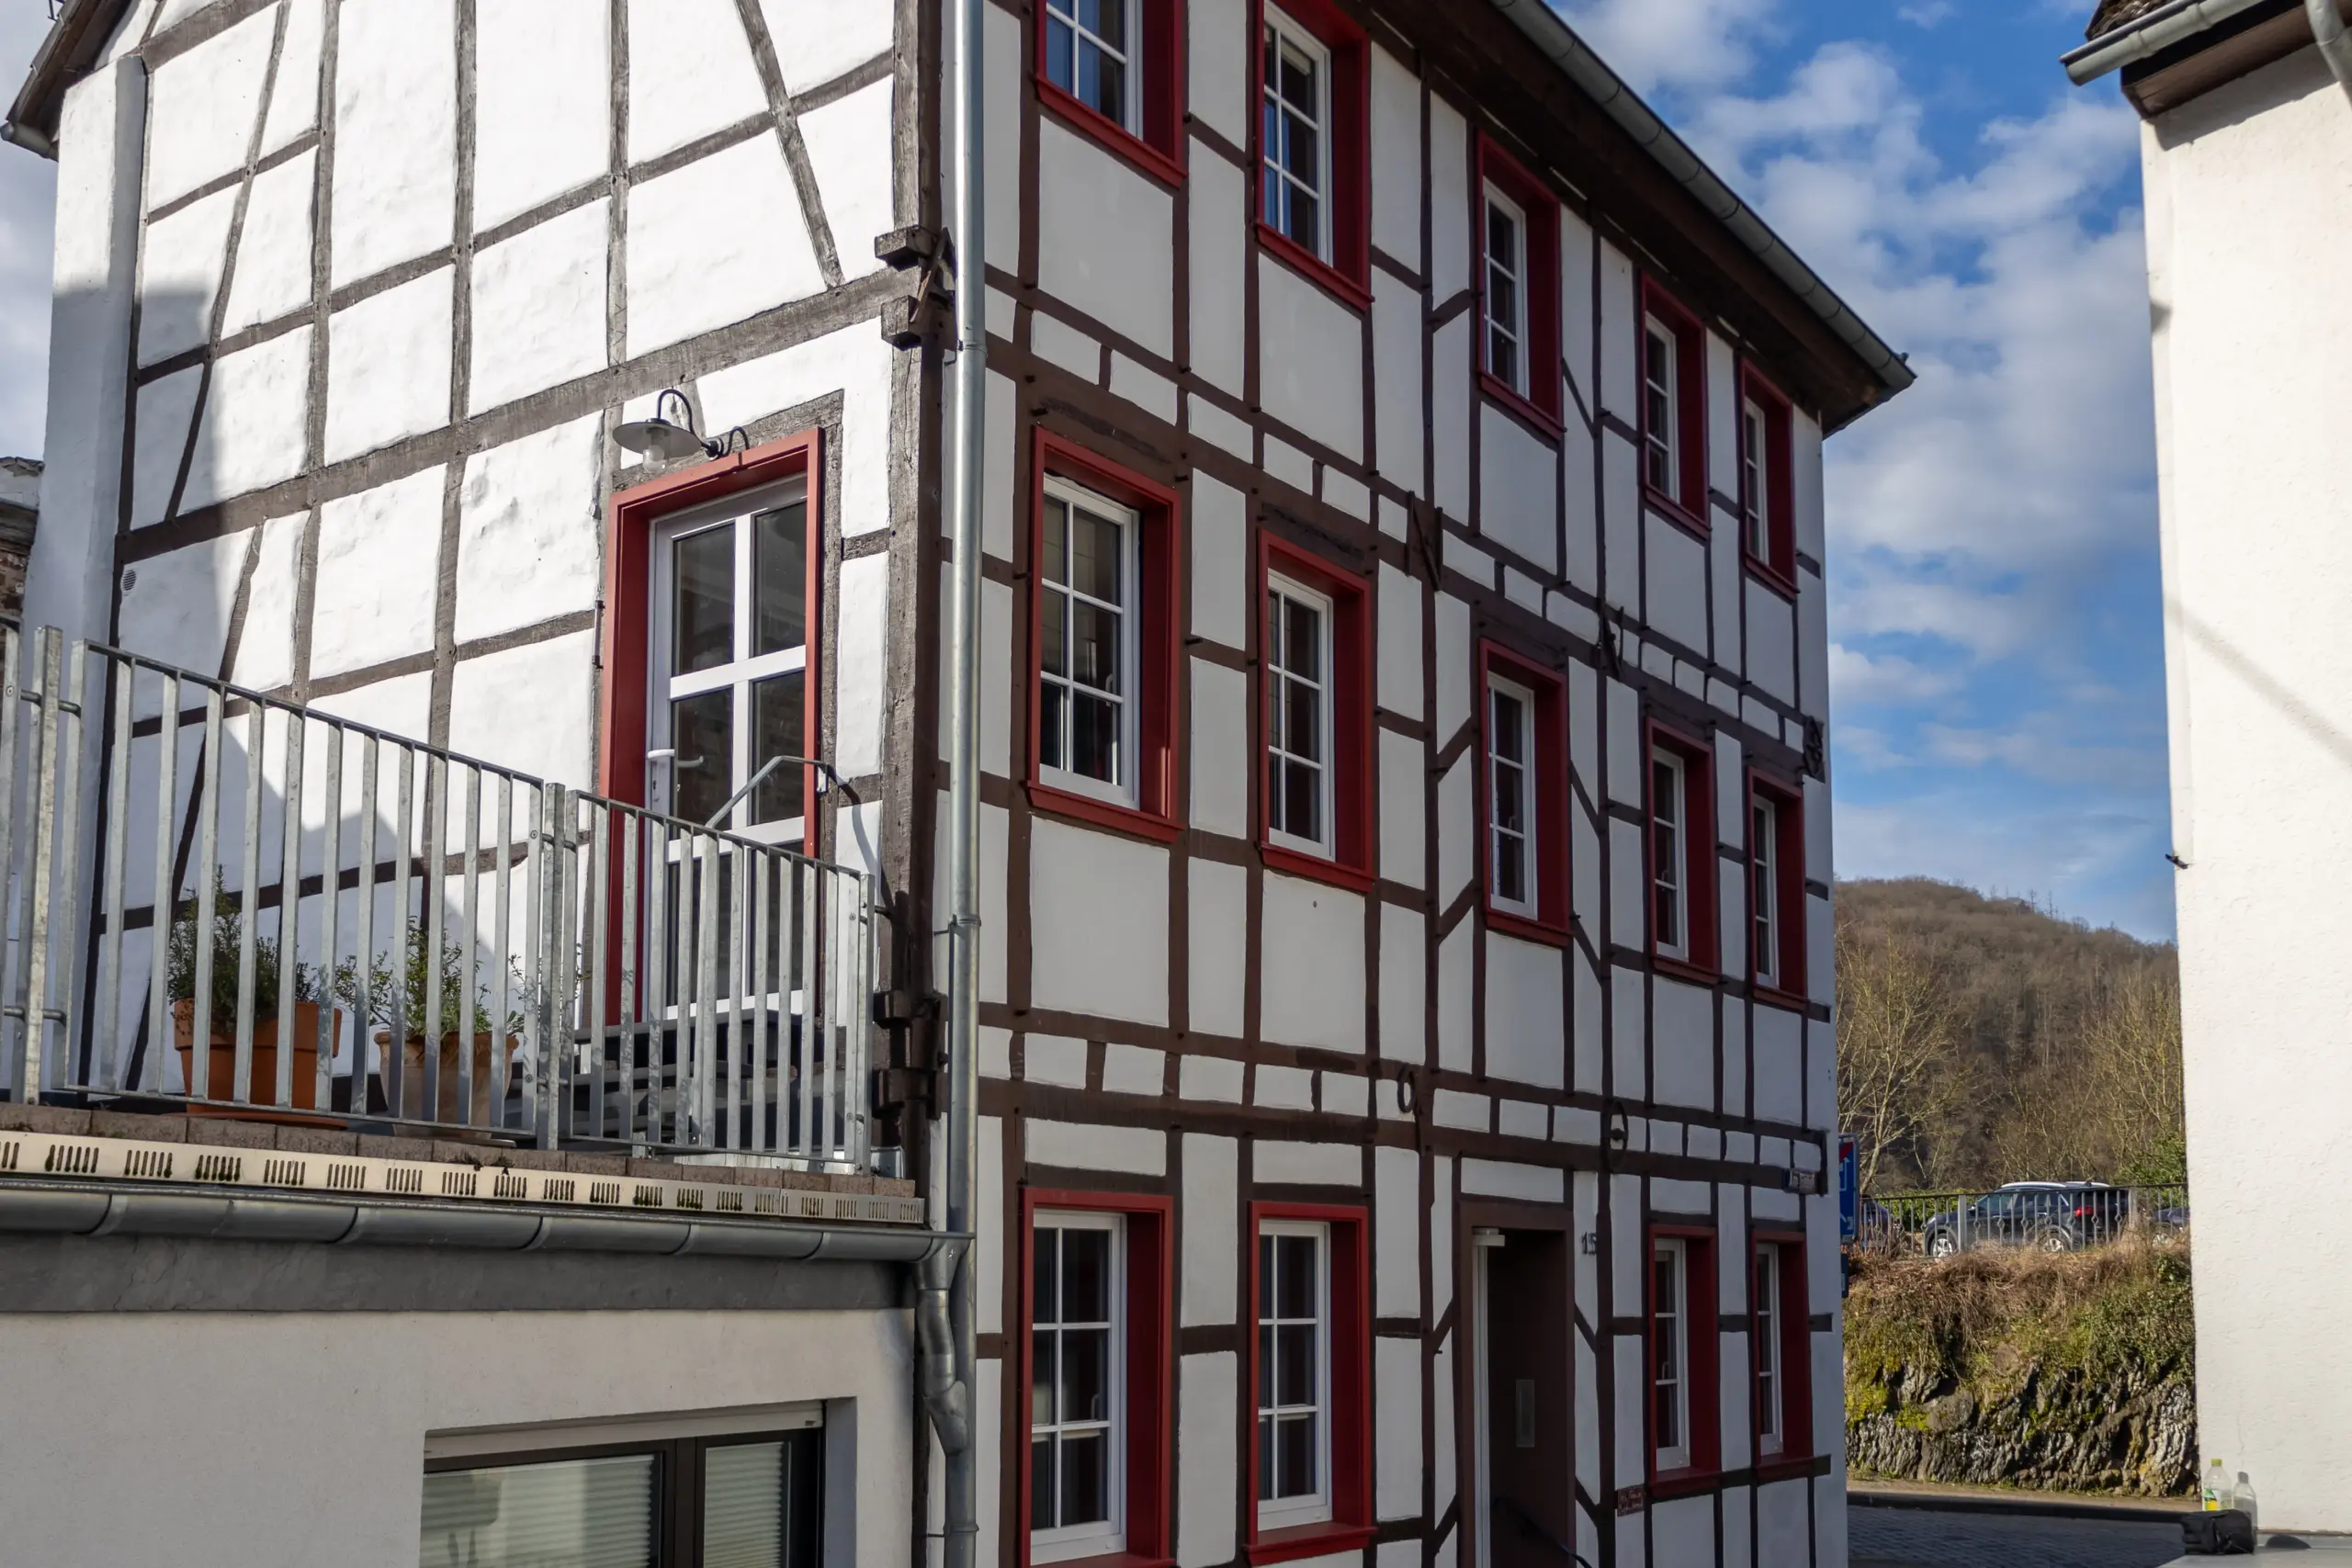 Außenansicht des Fachwerks und der Terrasse vom Ferienhaus in Heimbach in der Eifel.